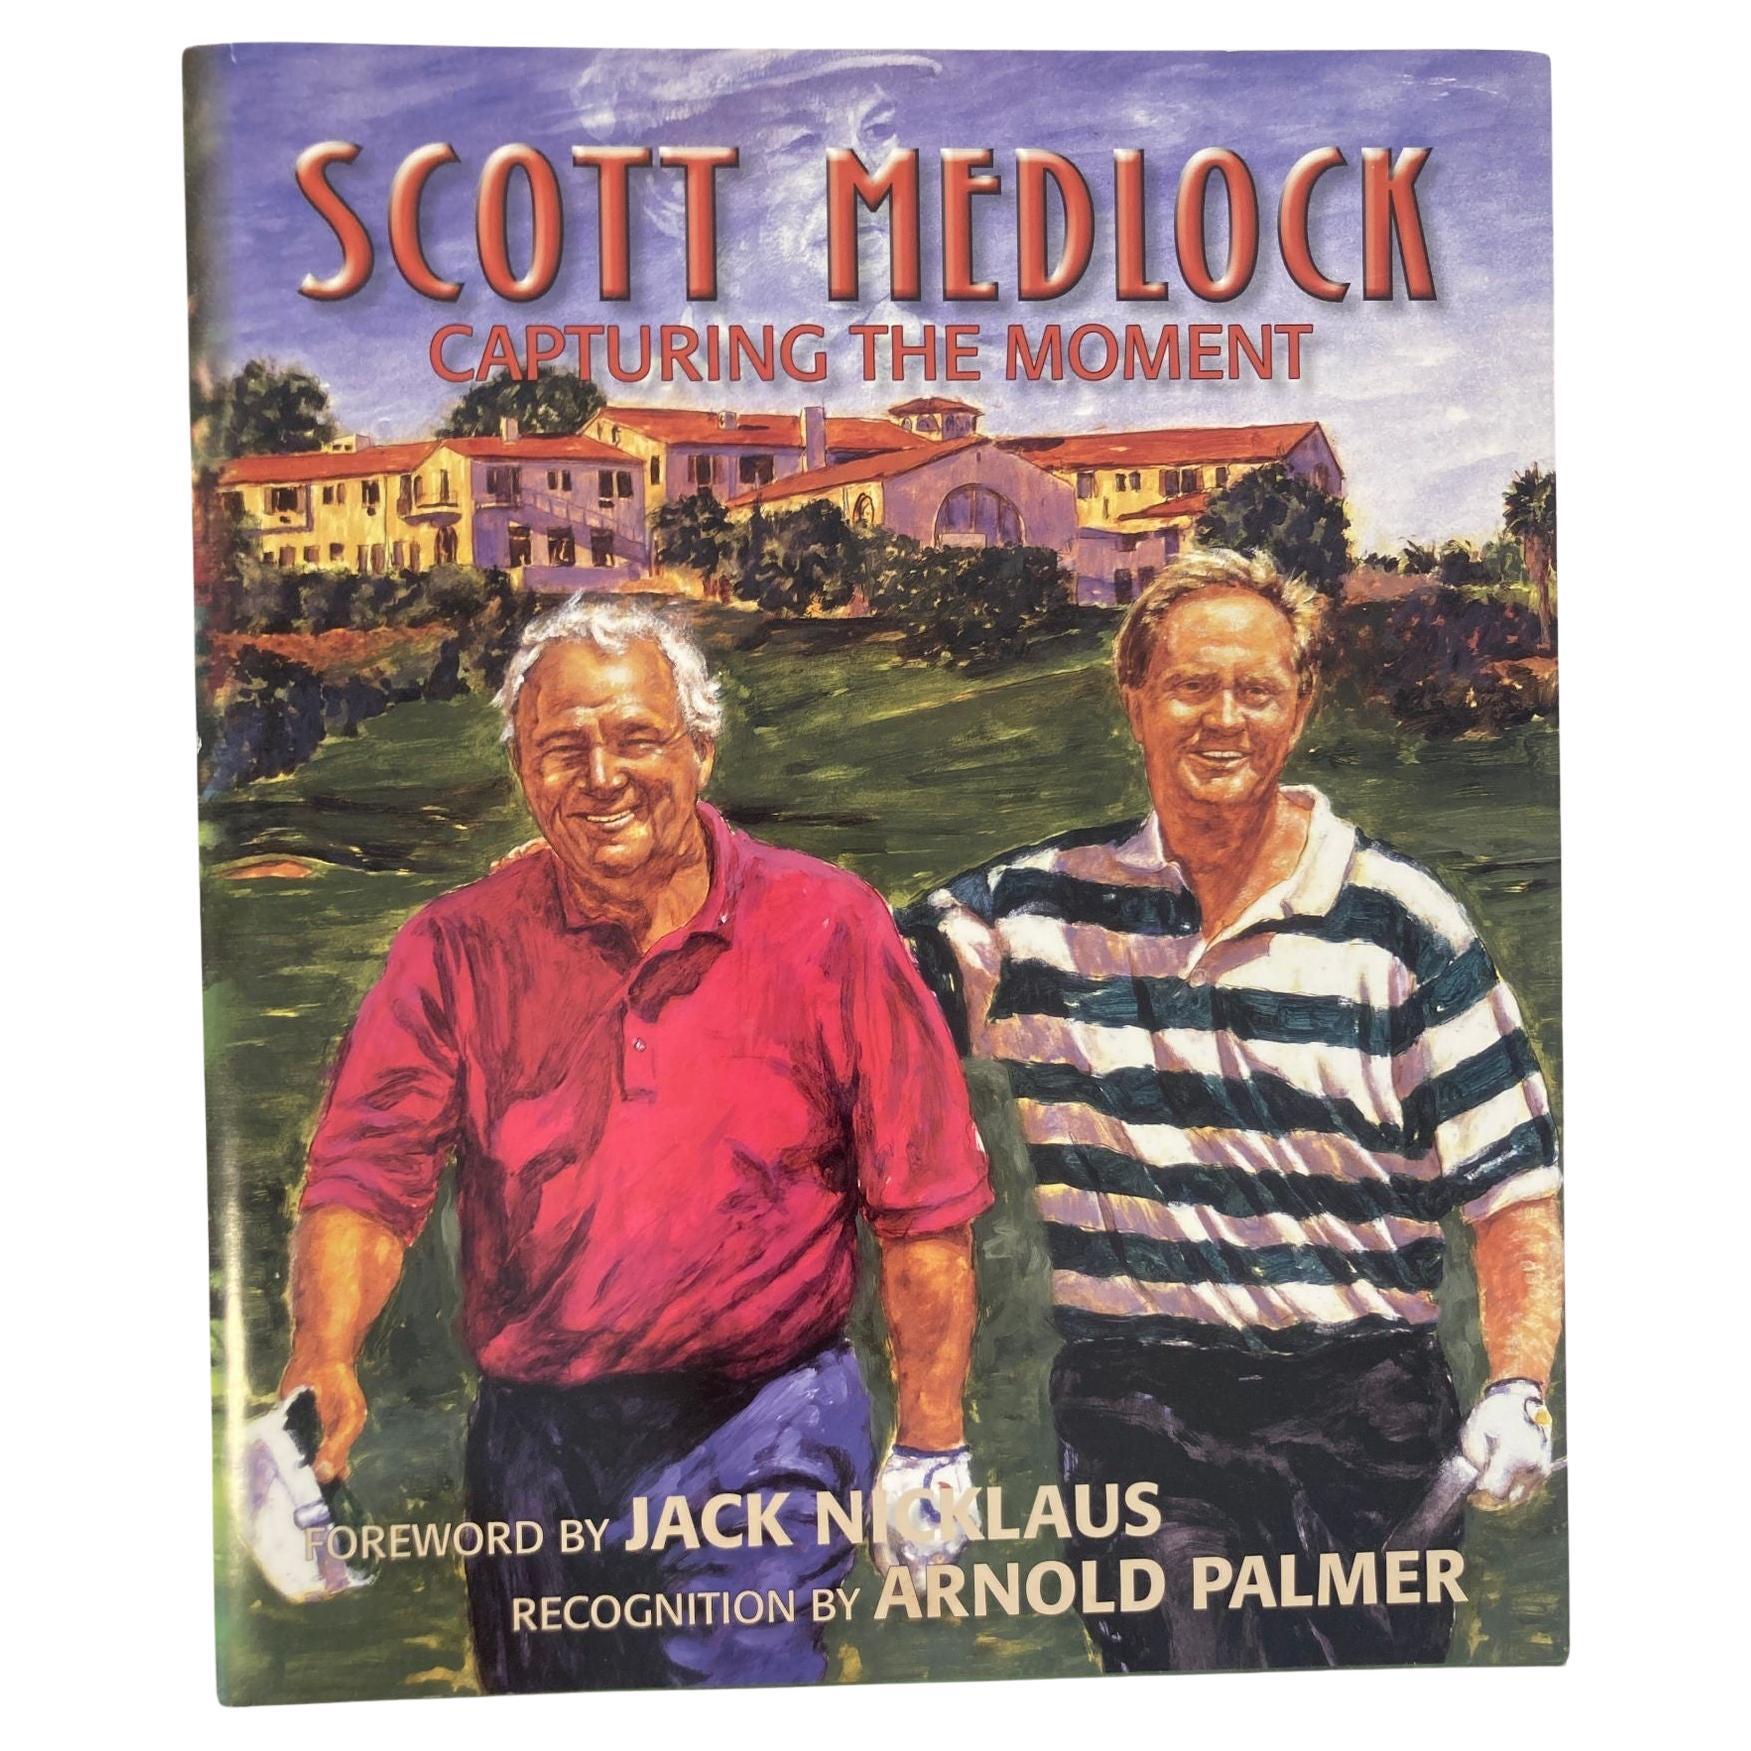 Livre à couverture rigide « Capturing the moment » de Scott Medlock, 2010 signé en vente